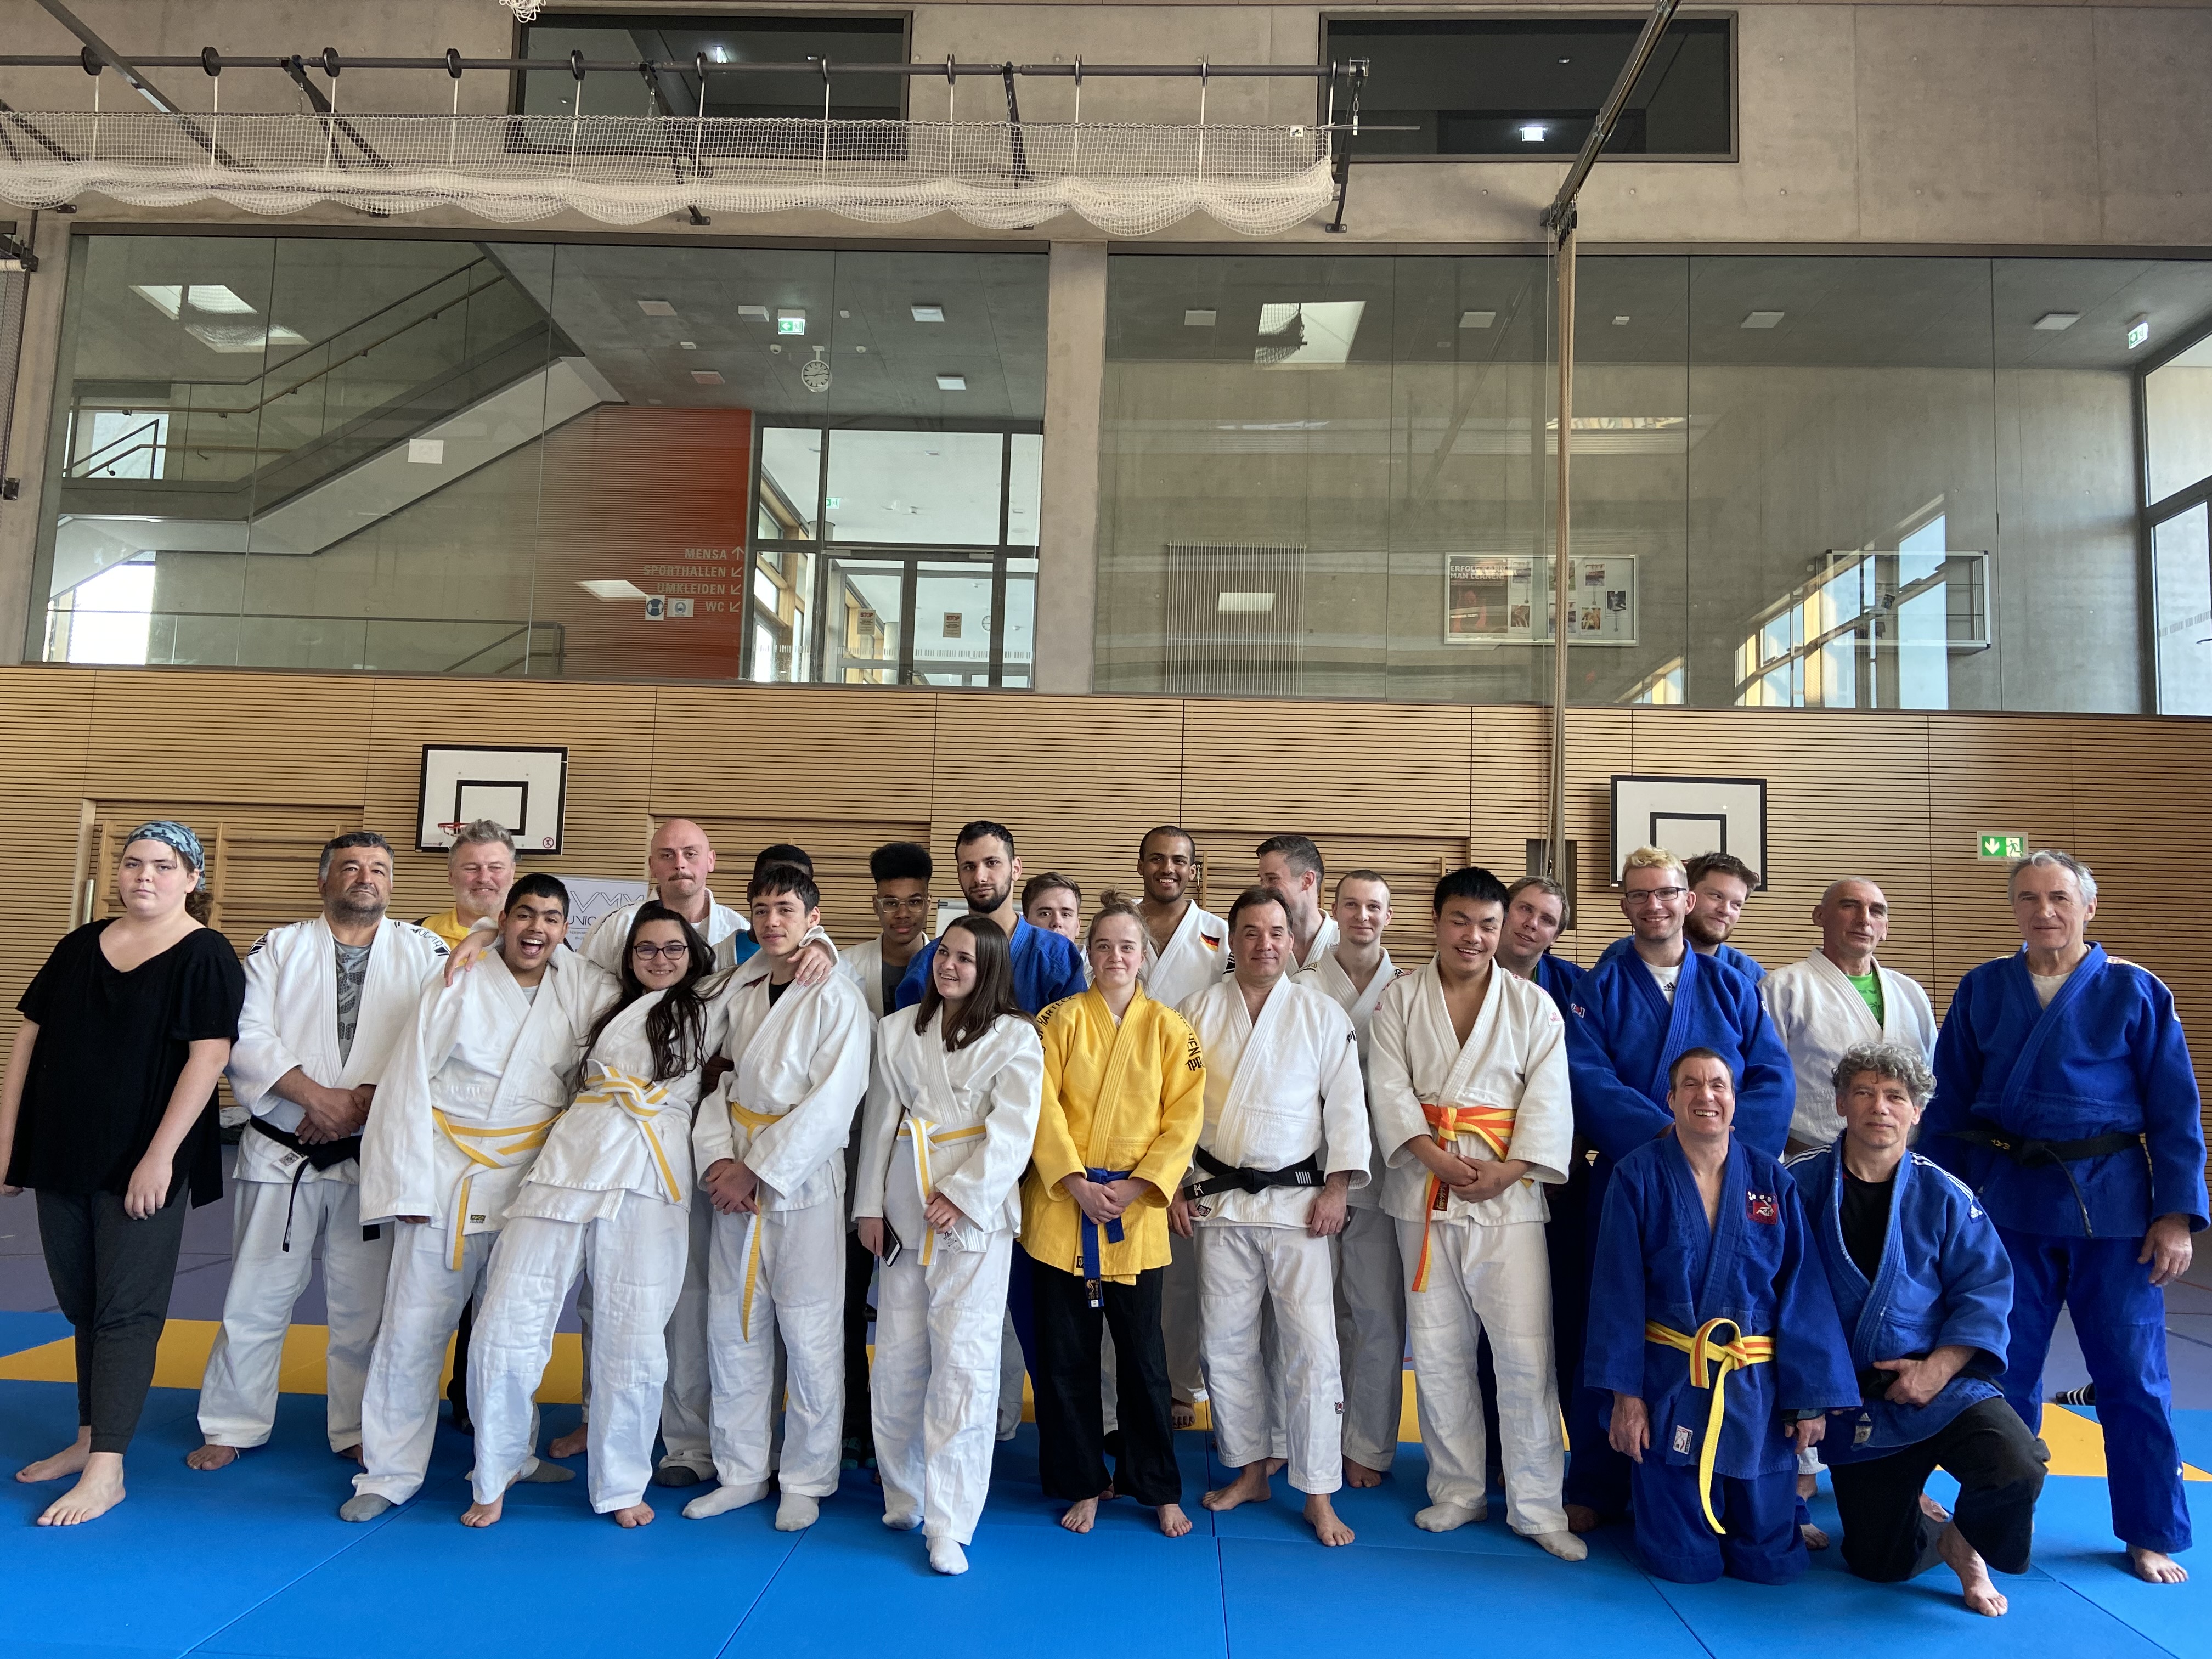 Unsere ID-Judoka posieren für ein Gruppenfoto in der Sporthalle.